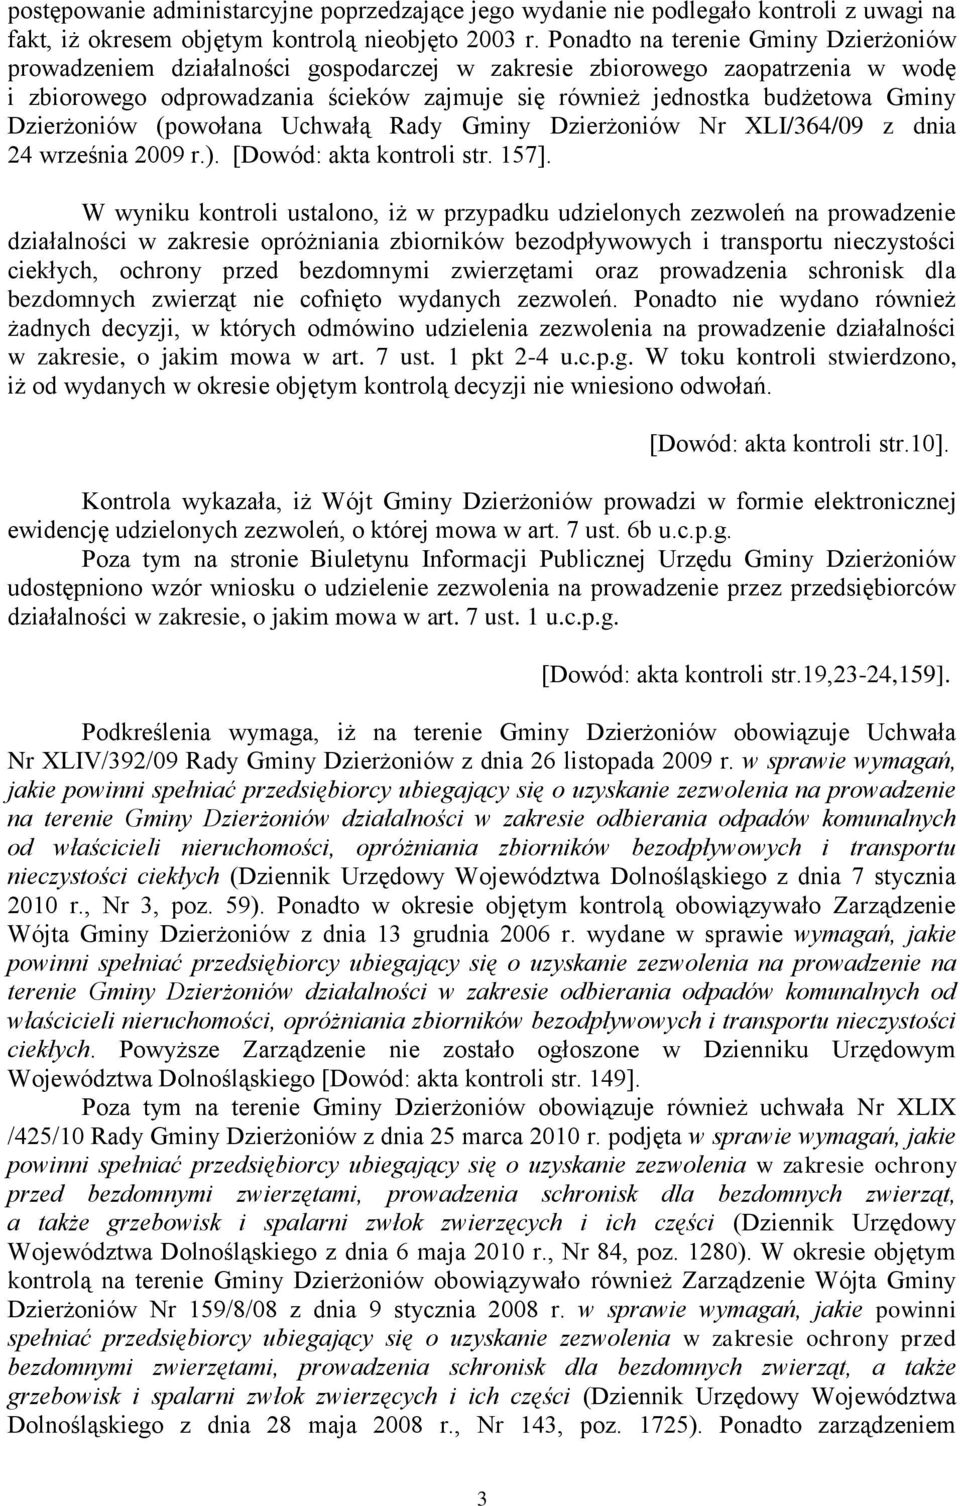 Dzierżoniów (powołana Uchwałą Rady Gminy Dzierżoniów Nr XLI/364/09 z dnia 24 września 2009 r.). [Dowód: akta kontroli str. 157].